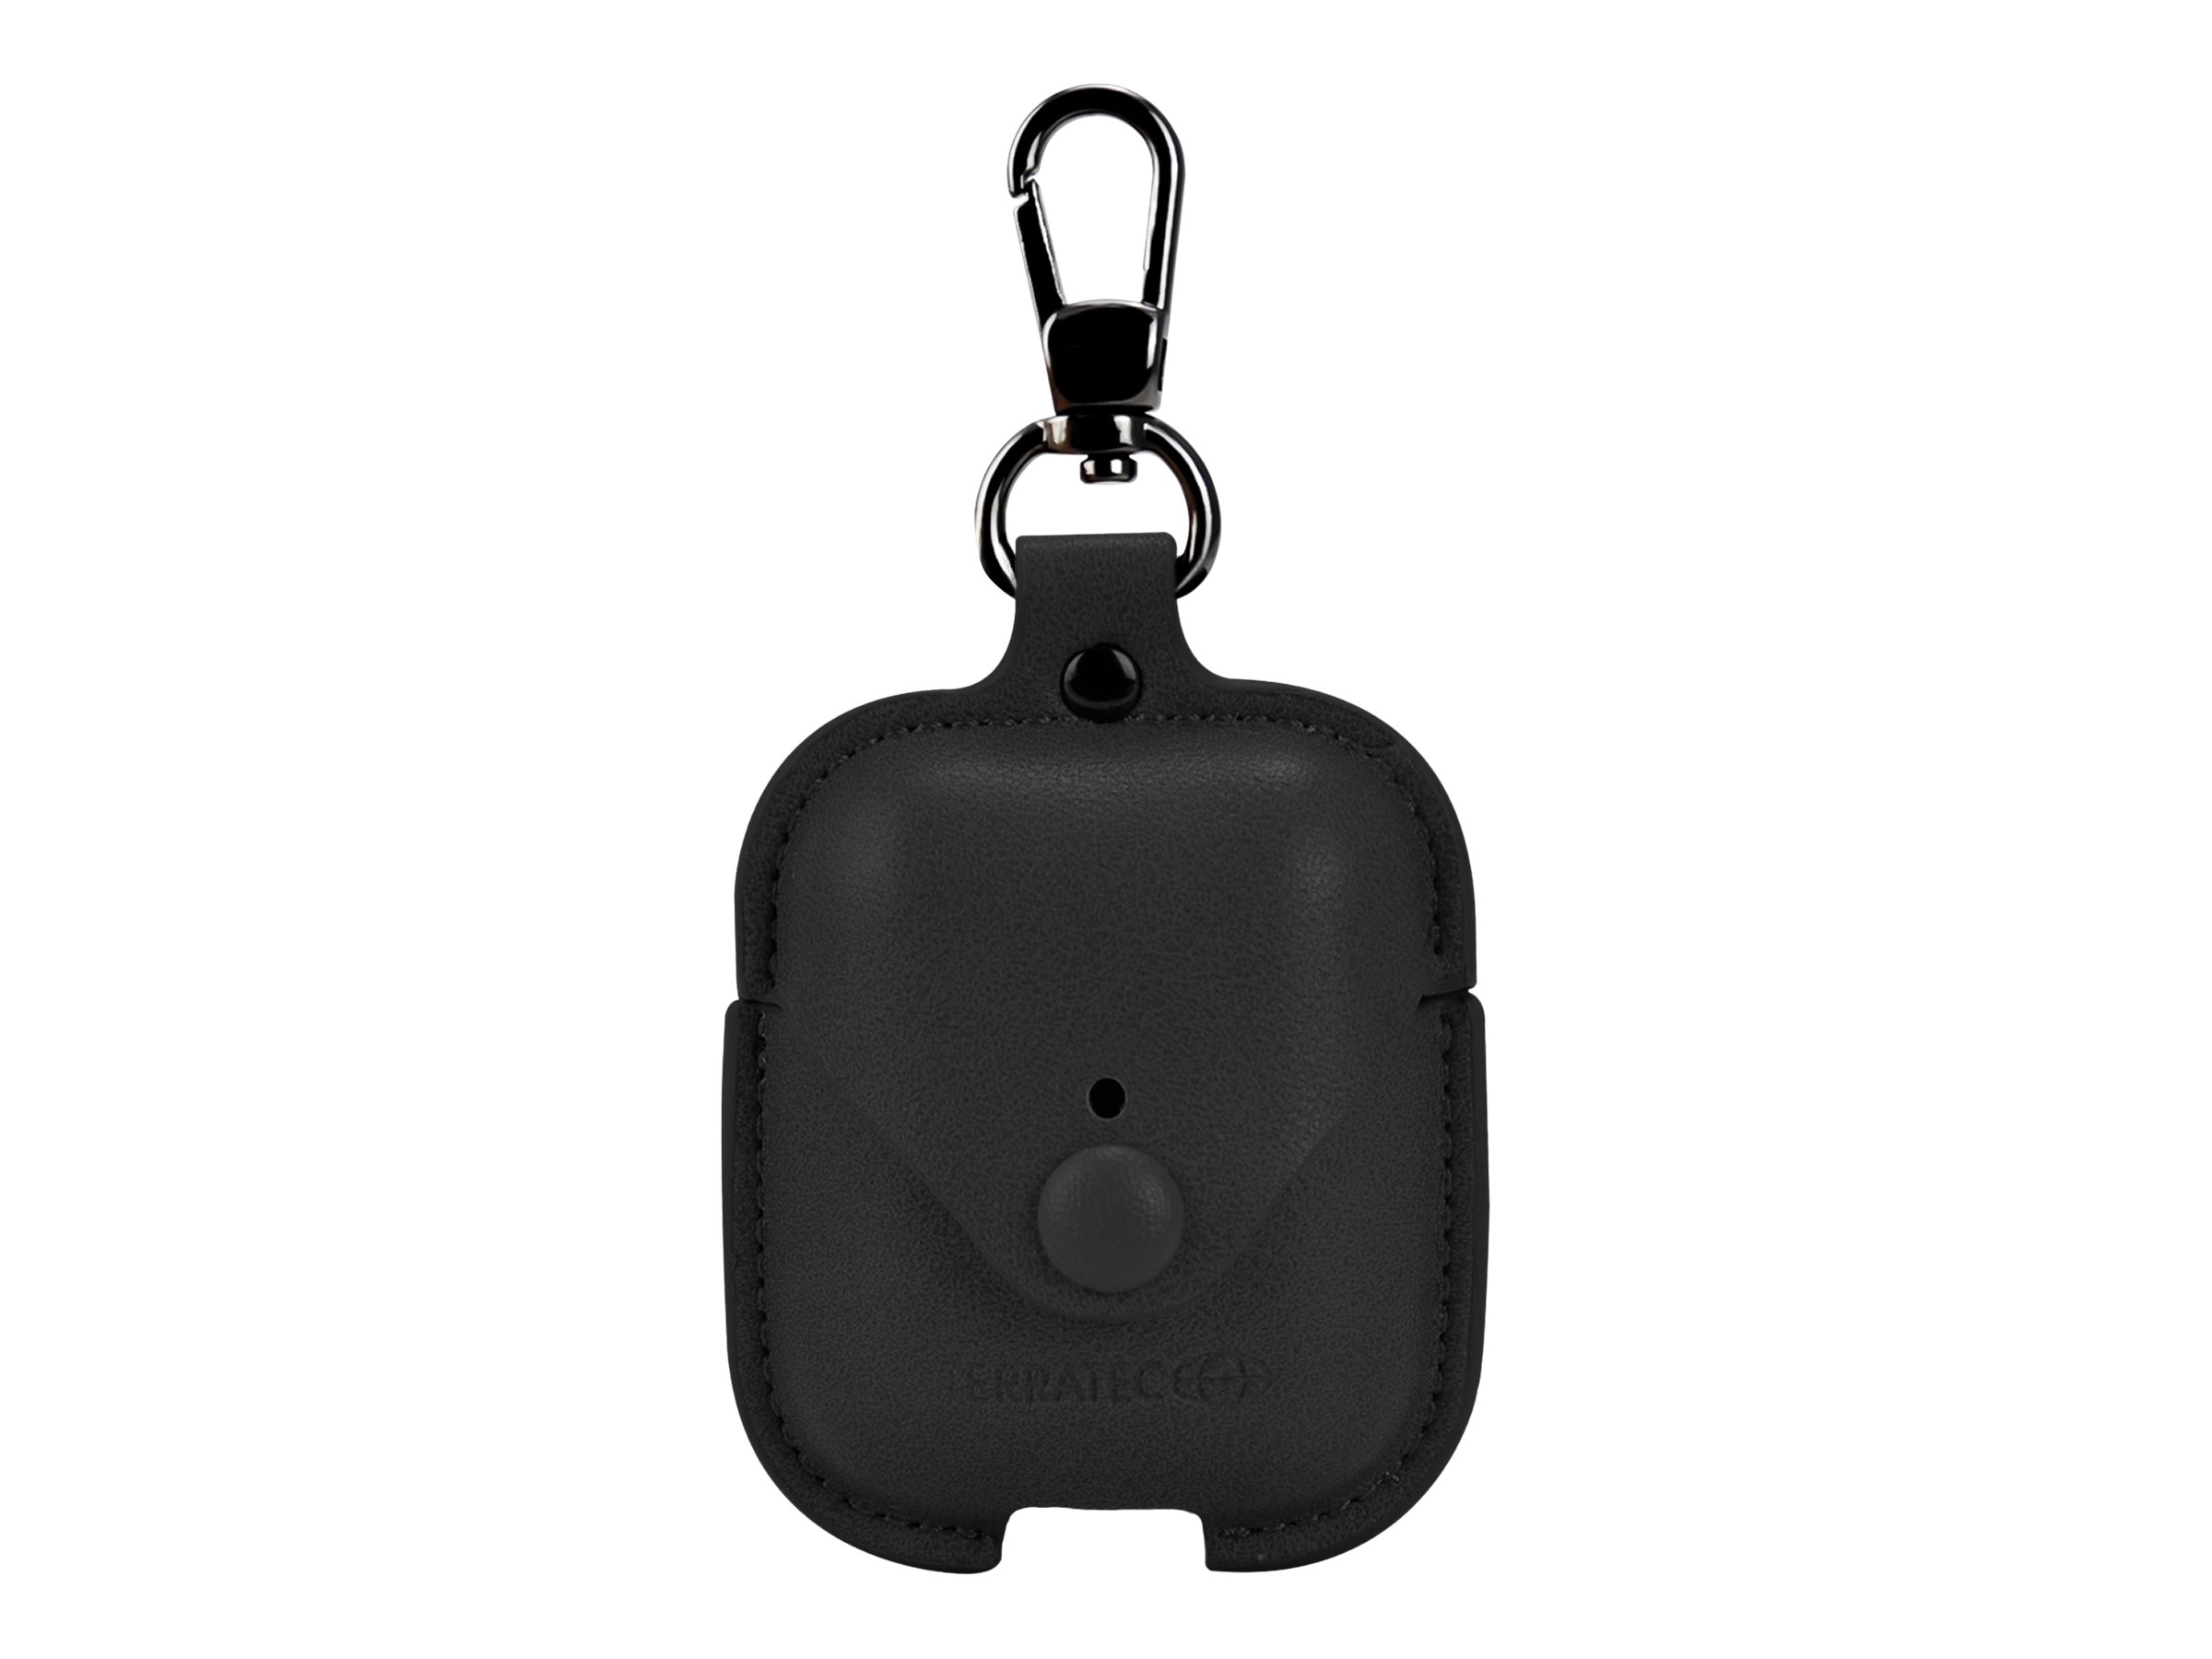 TerraTec Air Box - Tasche für Kopfhöhrer - Polycarbonat - schwarzes Leder - für Apple AirPods (1. Generation, 2. Generation)